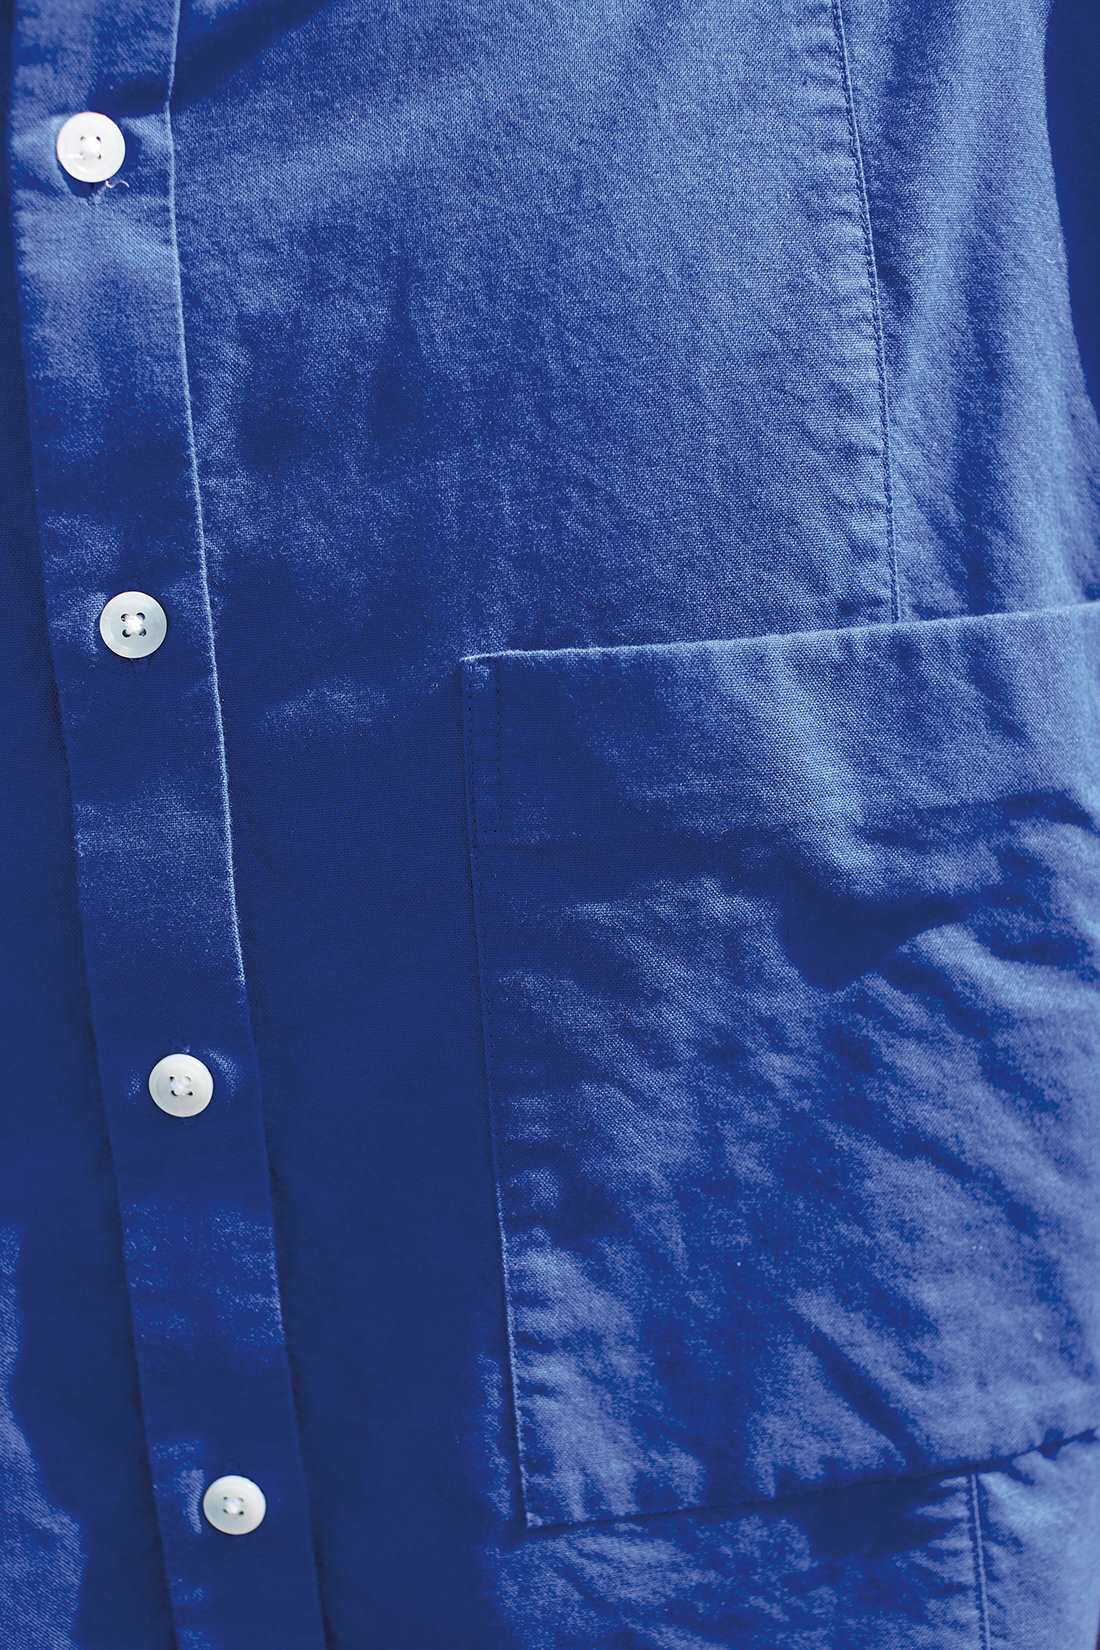 サニークラウズ|サニークラウズ 青いパラソルシャツ〈メンズ〉